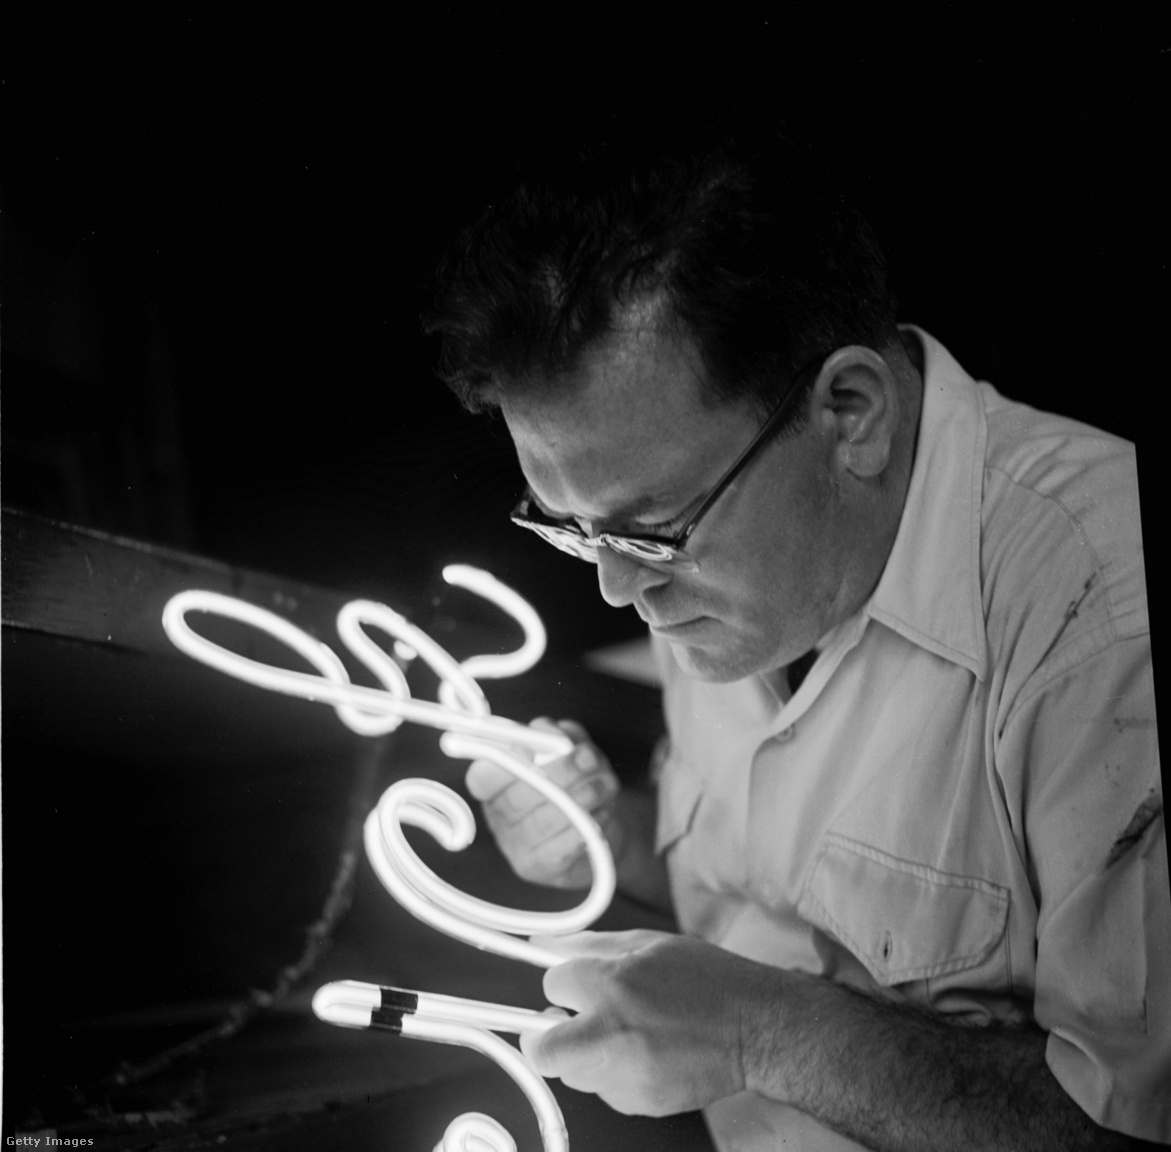 Egyesült Államok, New York, 1950 körül. Az Art-Craft-Strauss cég szakembere készít egy neonreklámot